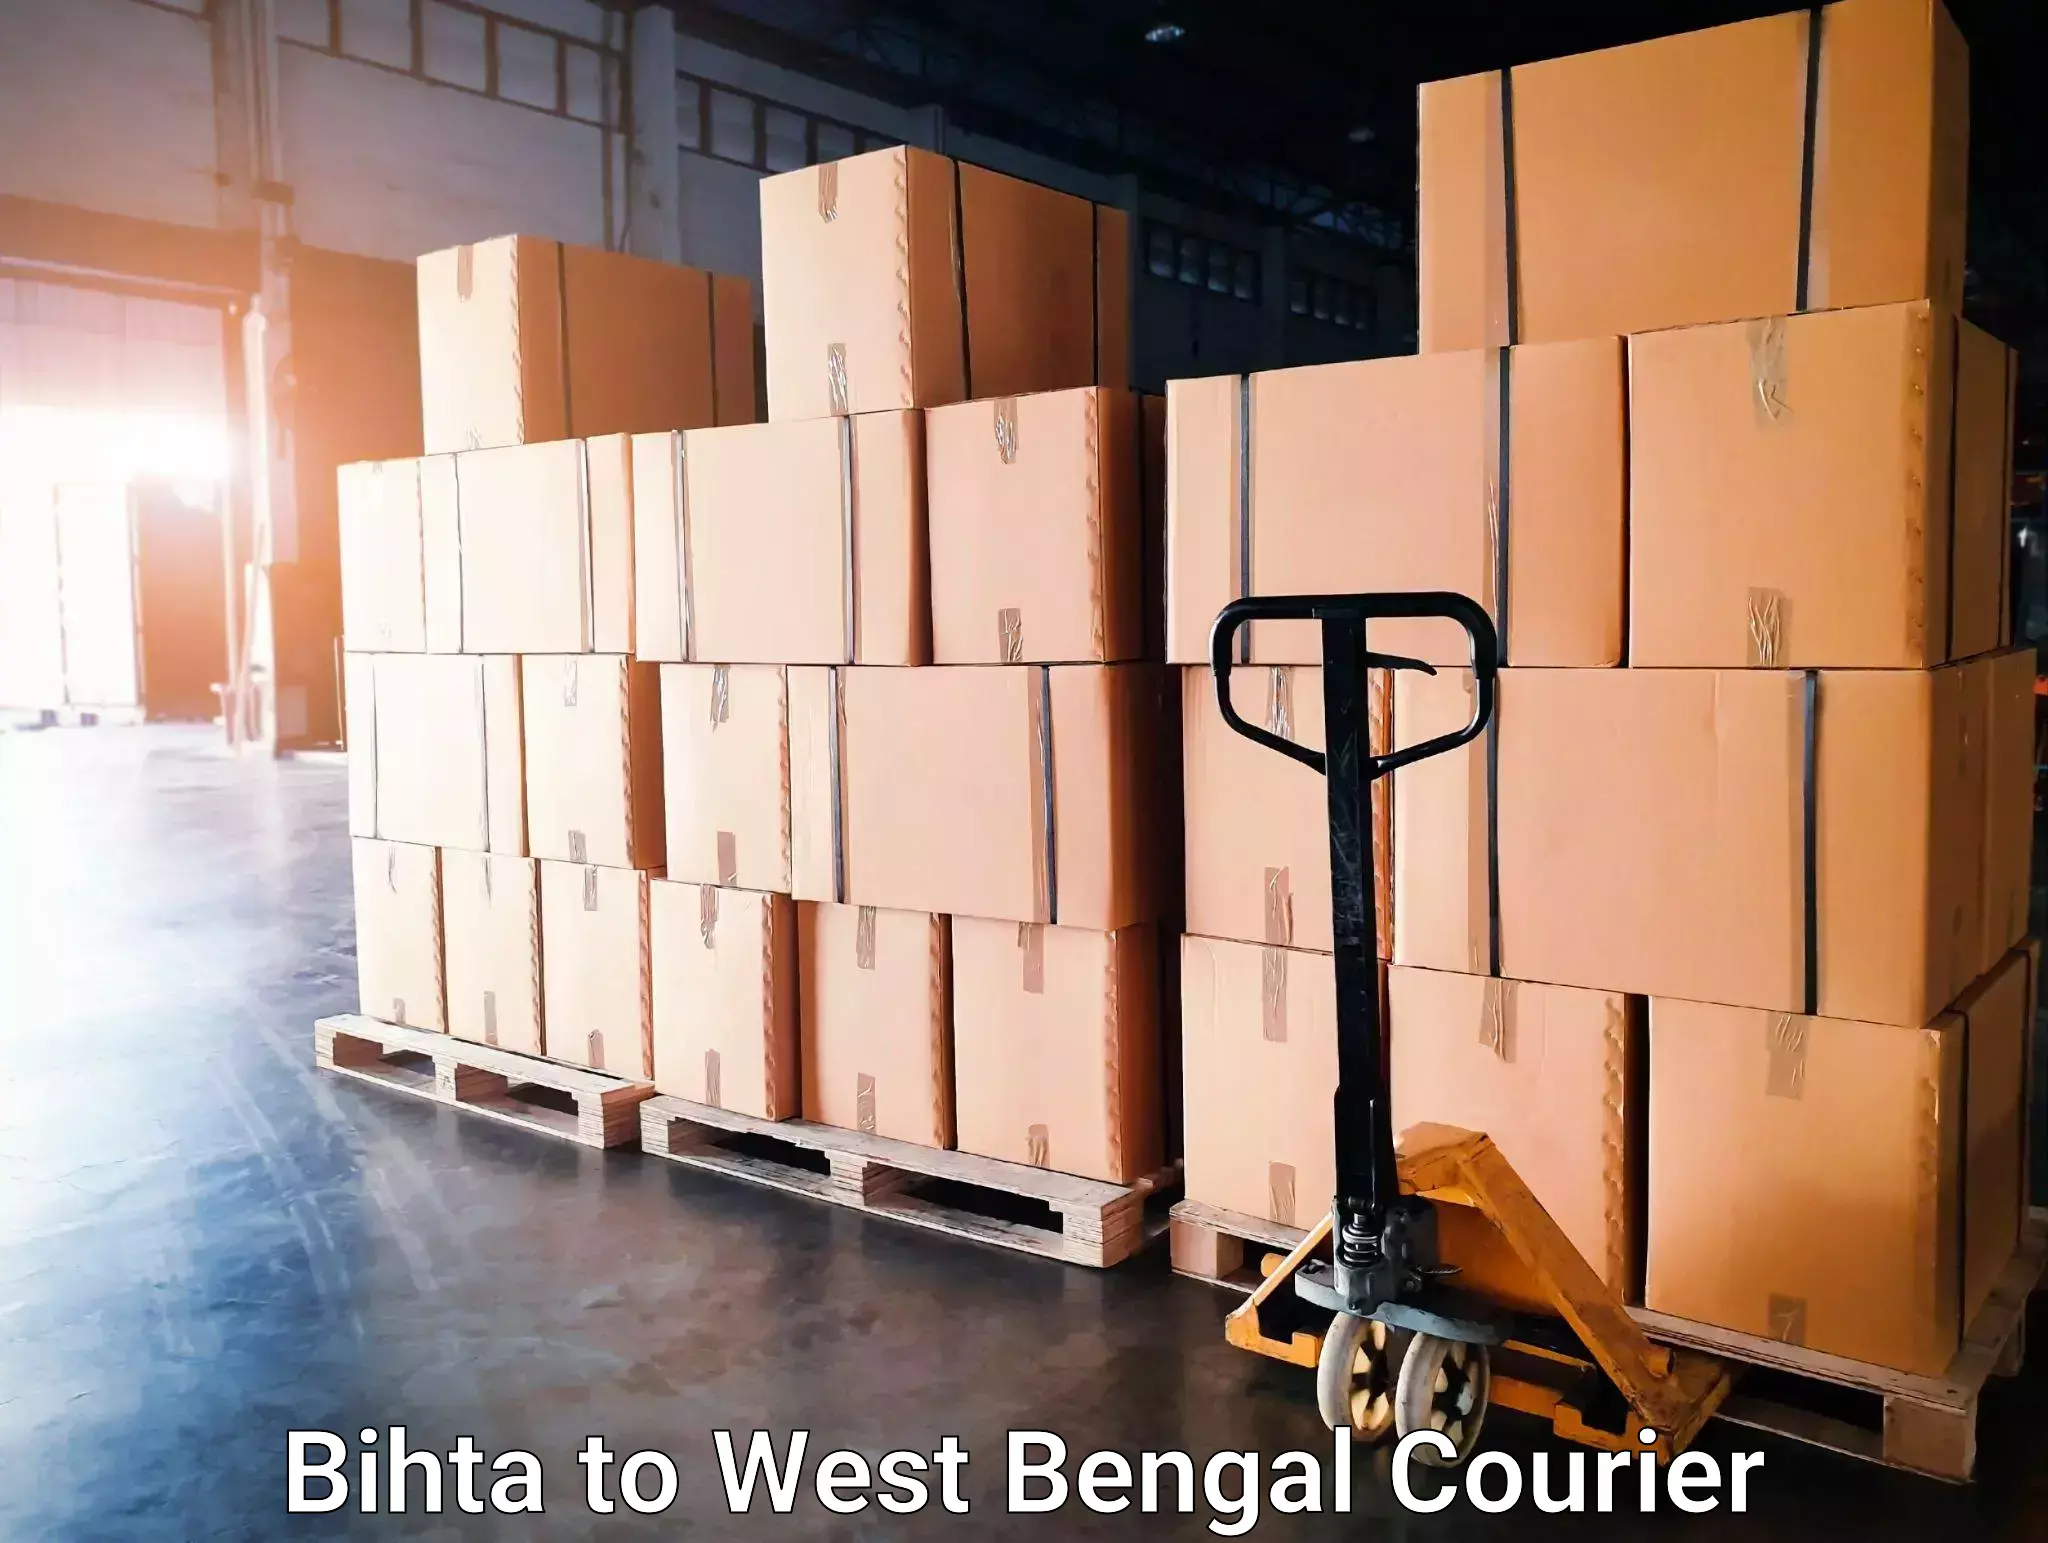 Seamless moving process Bihta to Panskura